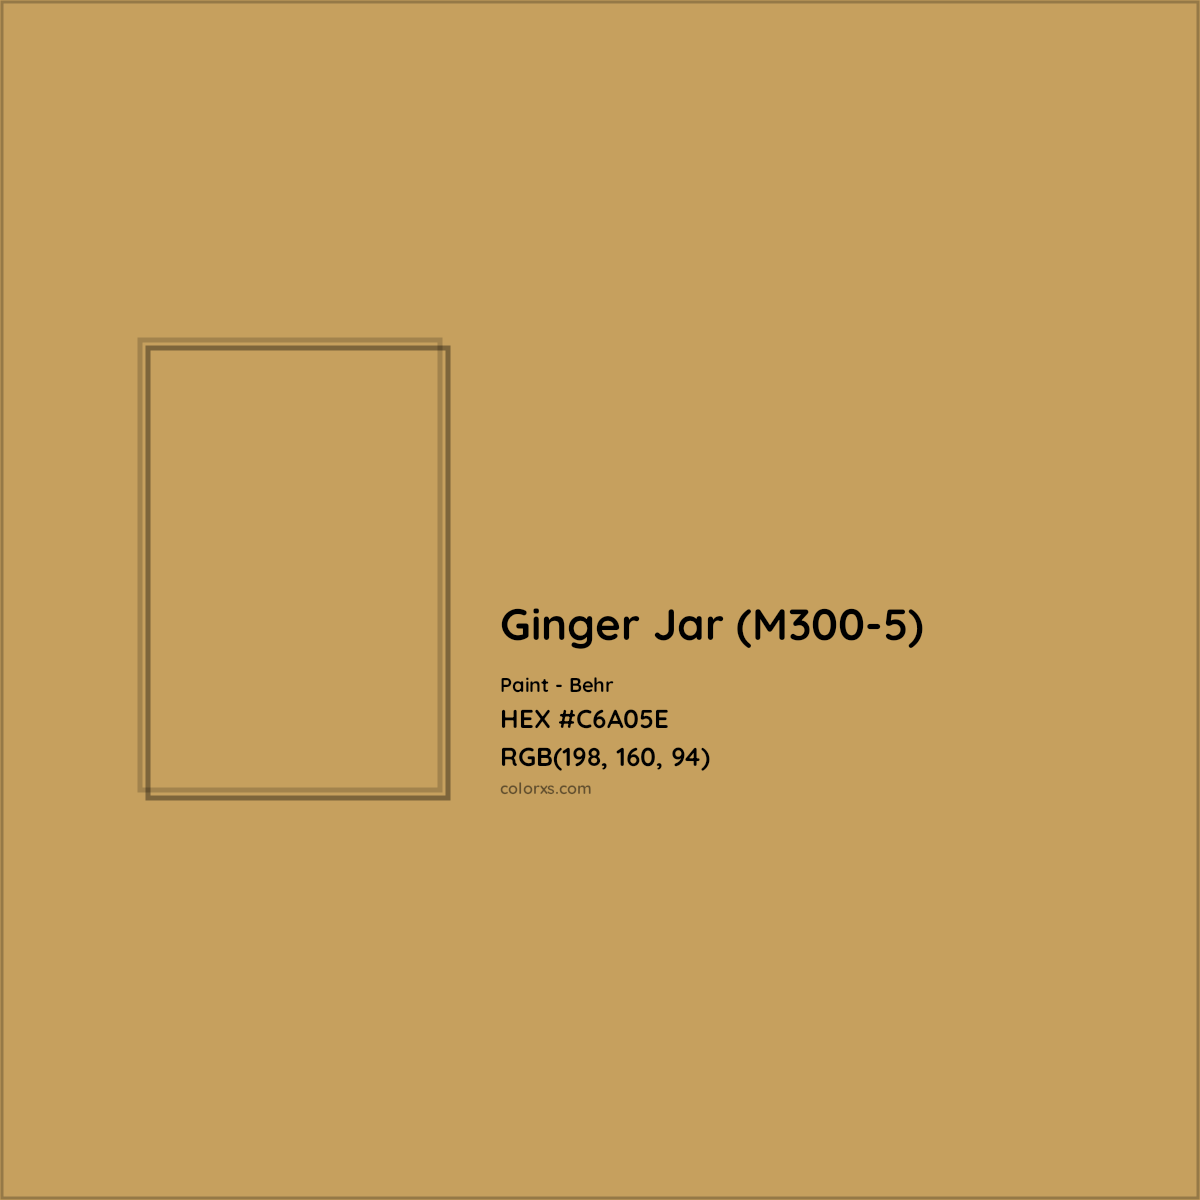 HEX #C6A05E Ginger Jar (M300-5) Paint Behr - Color Code